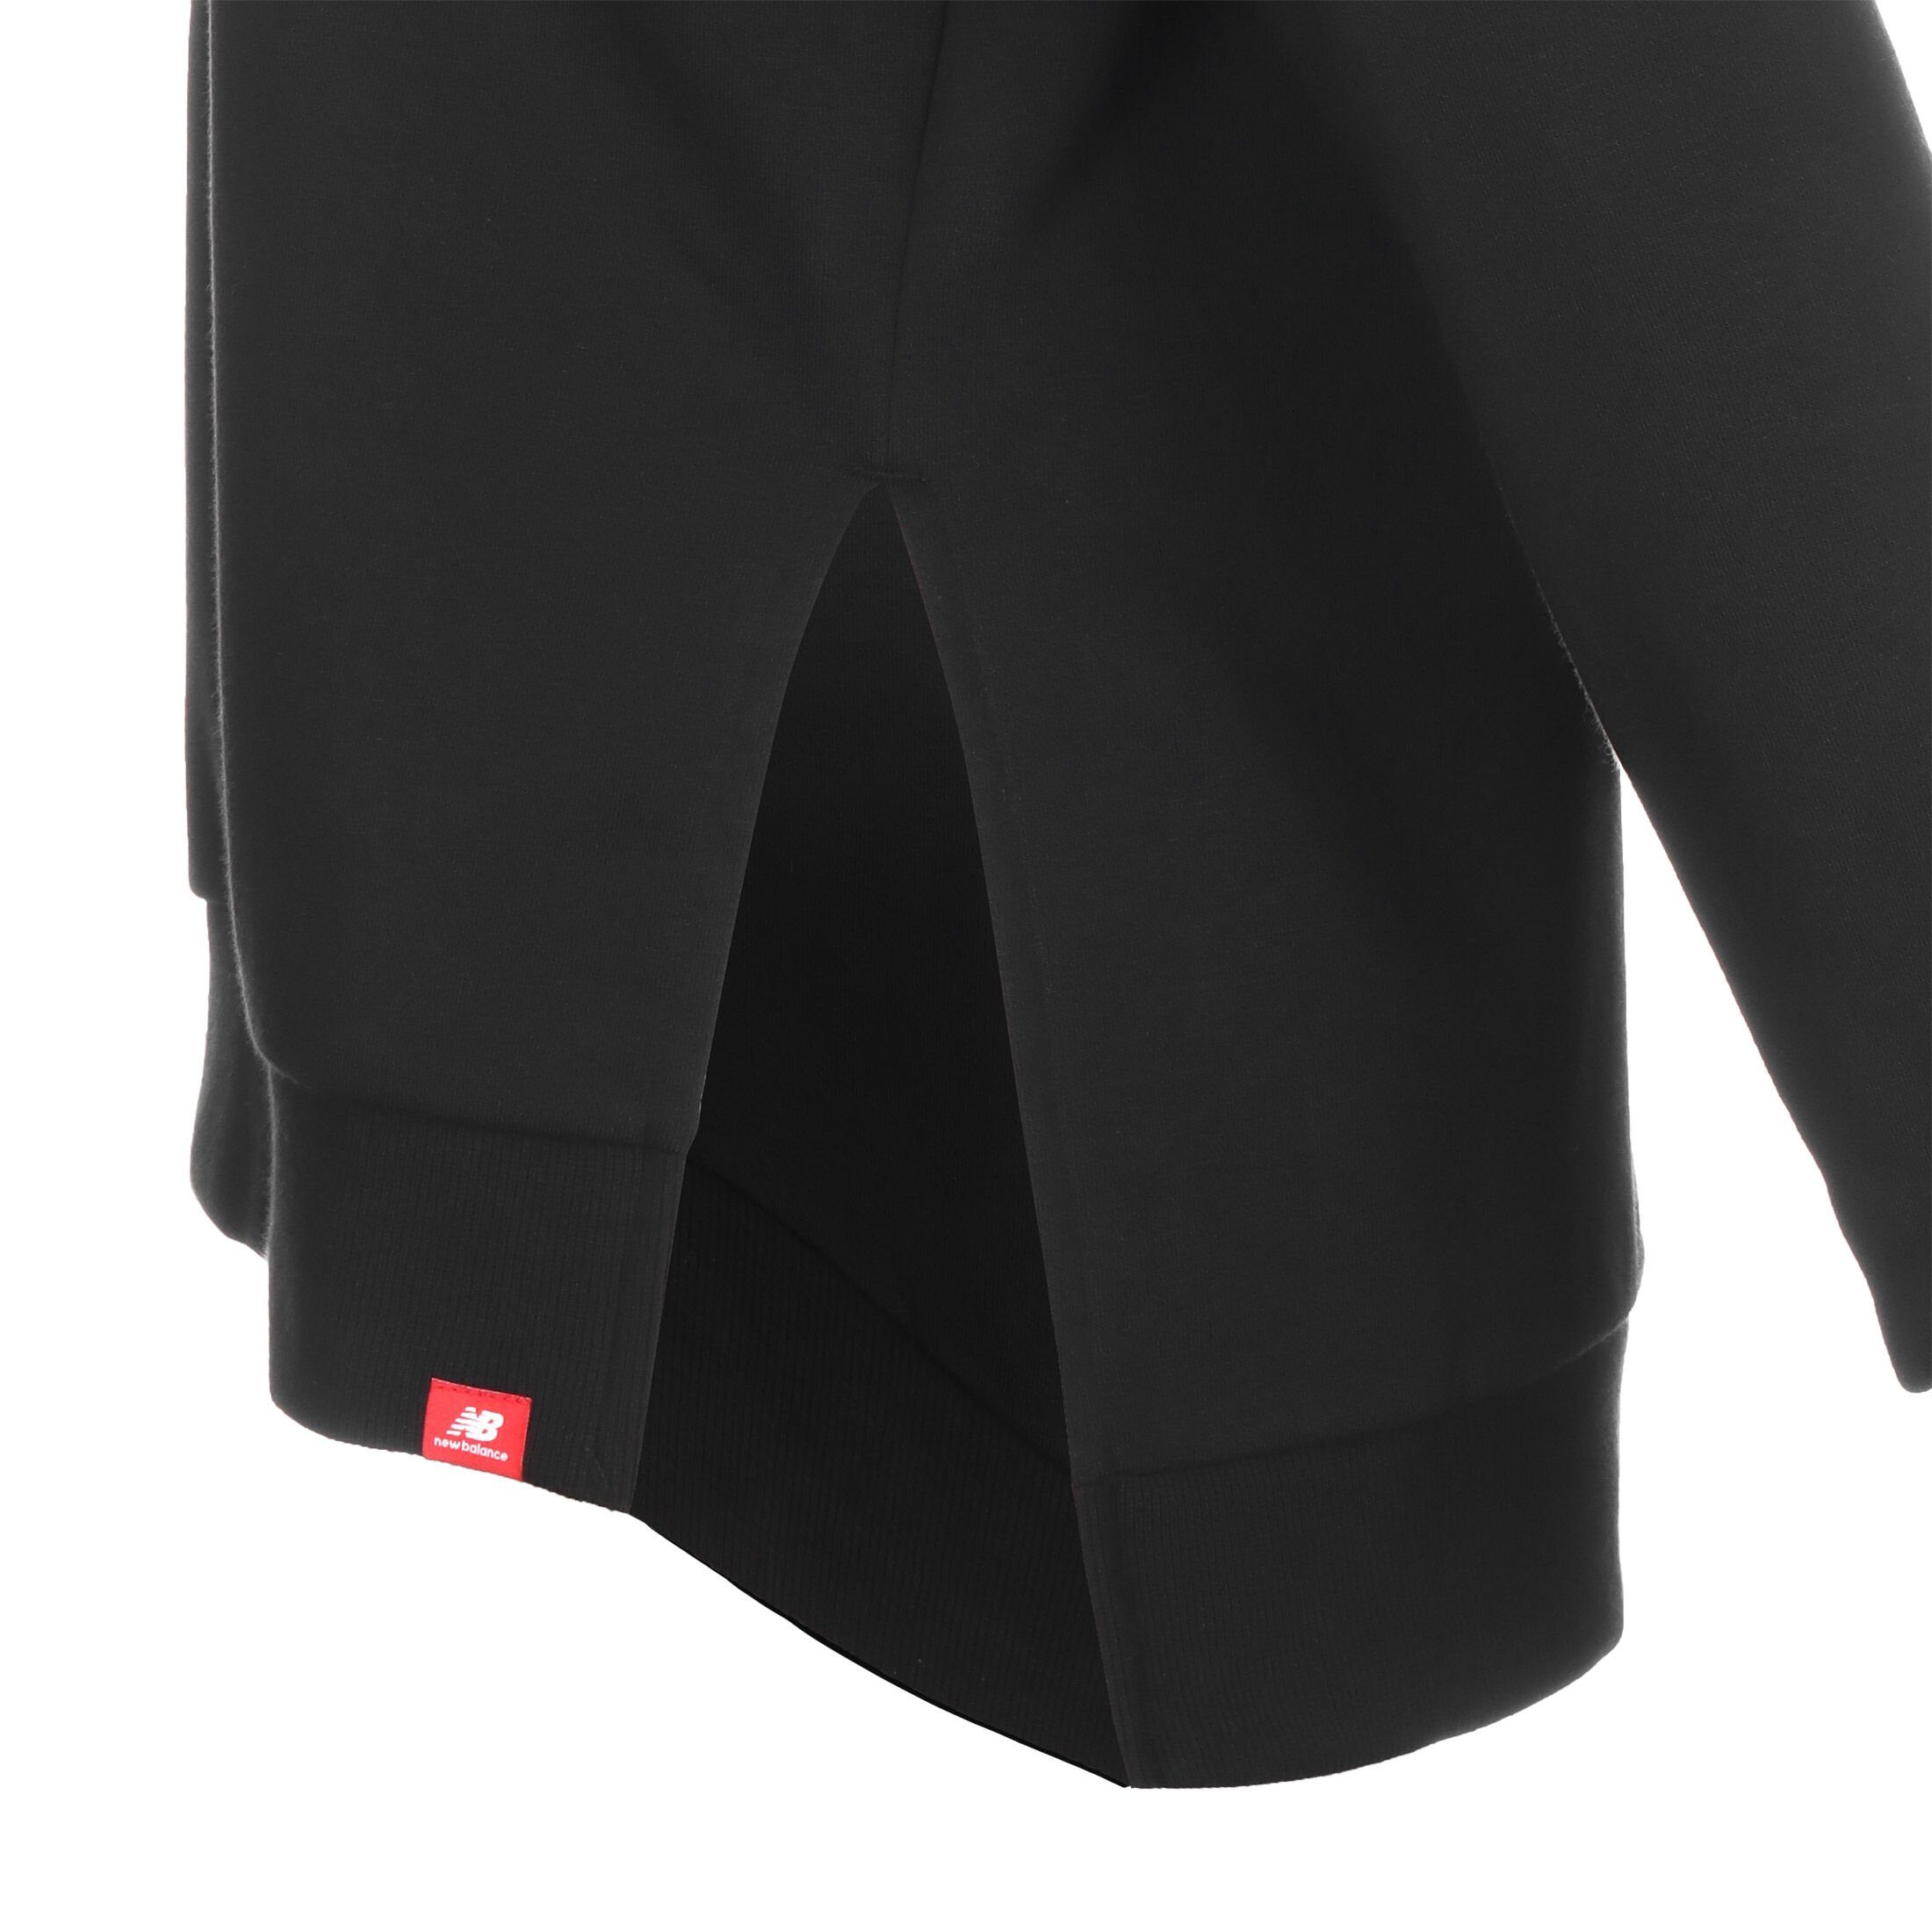 ID Damen New weiß / Sweatshirt Essentials Balance Crew Sweatshirt schwarz